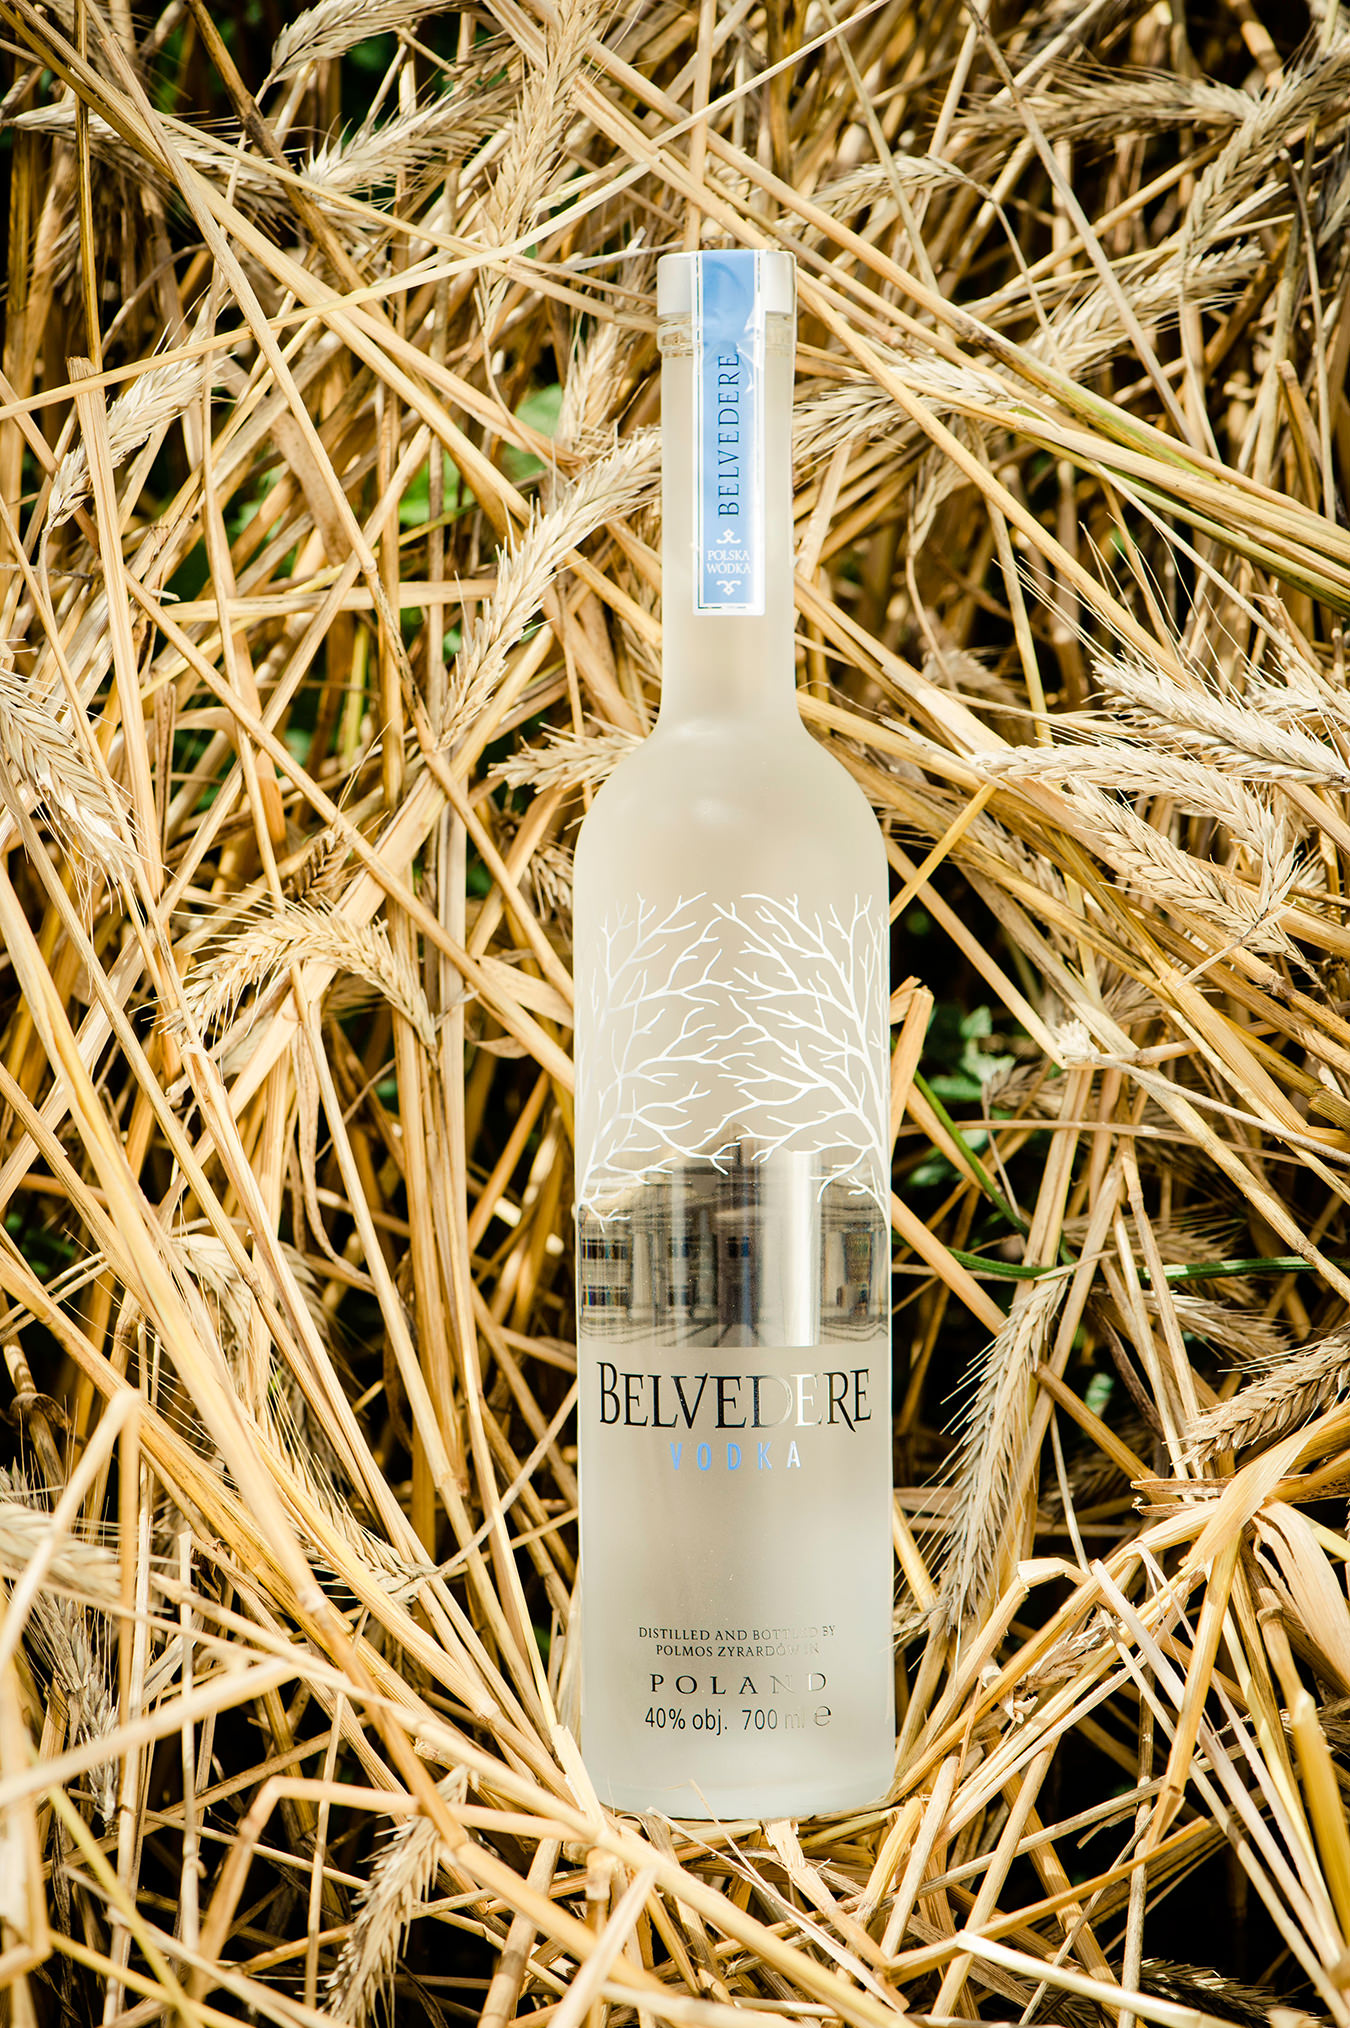 NUVO Magazine FYI Drink: Belvedere Vodka